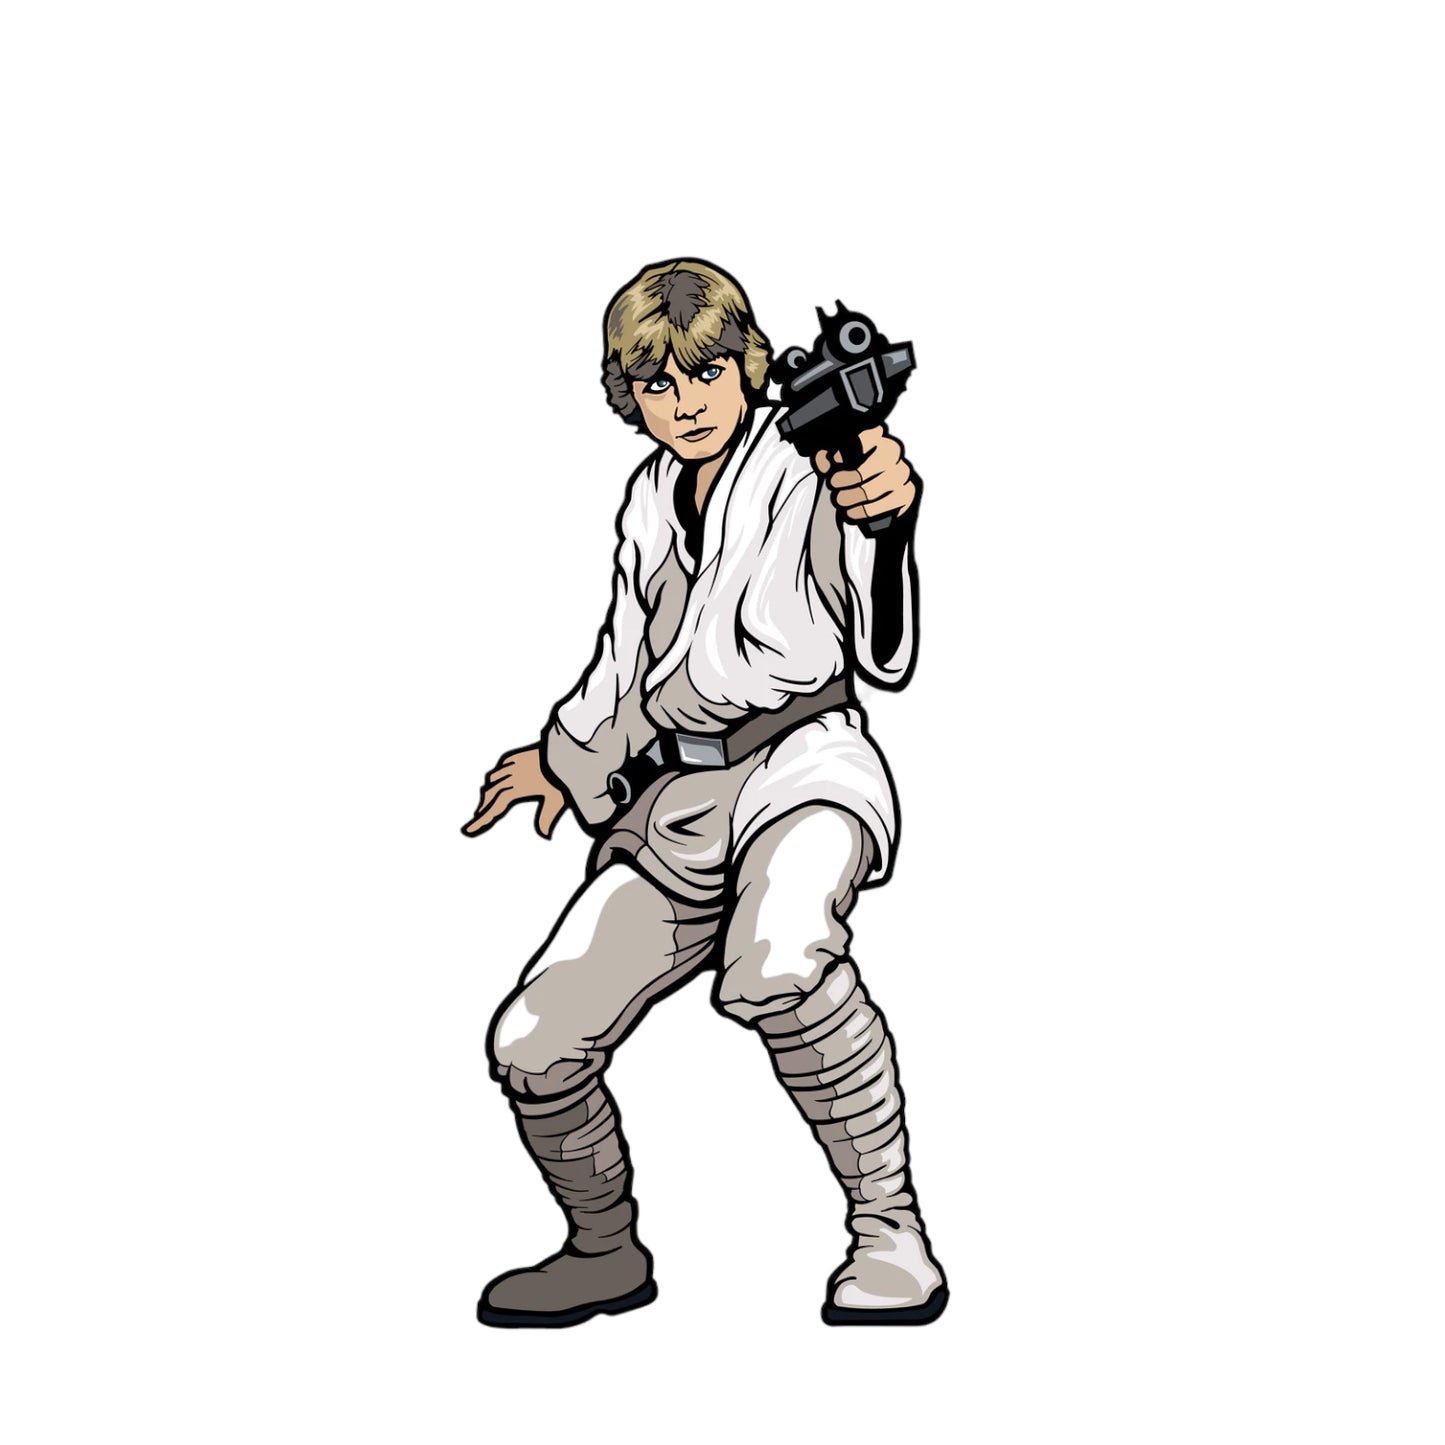 Luke Skywalker (699)